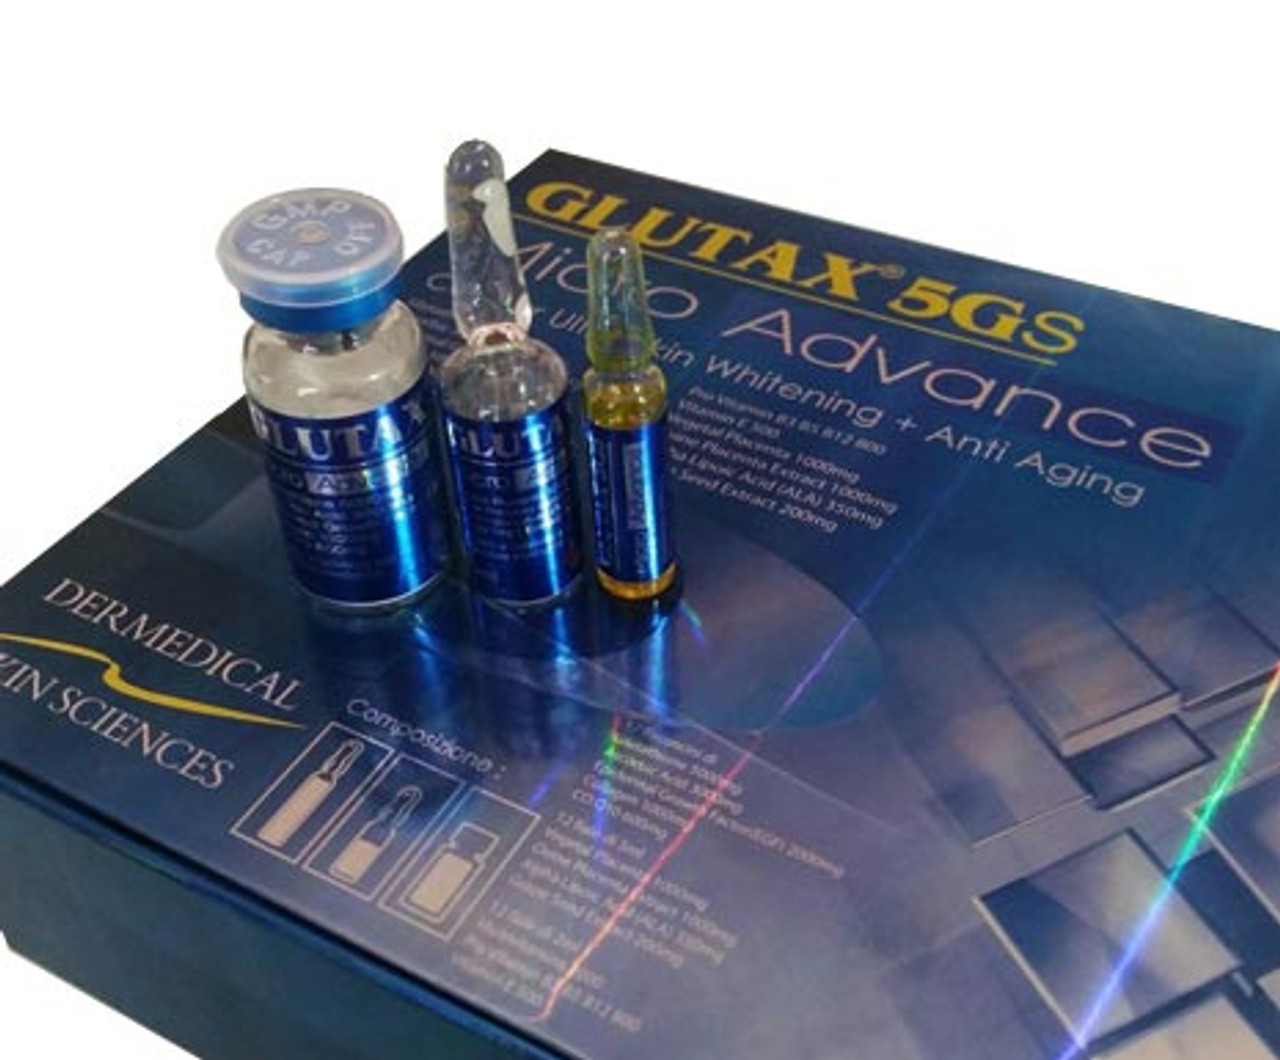 Authentic GLUTAX 5GS MICRO ADVANCE 12 Vials - Skin Whitening Glutathione 